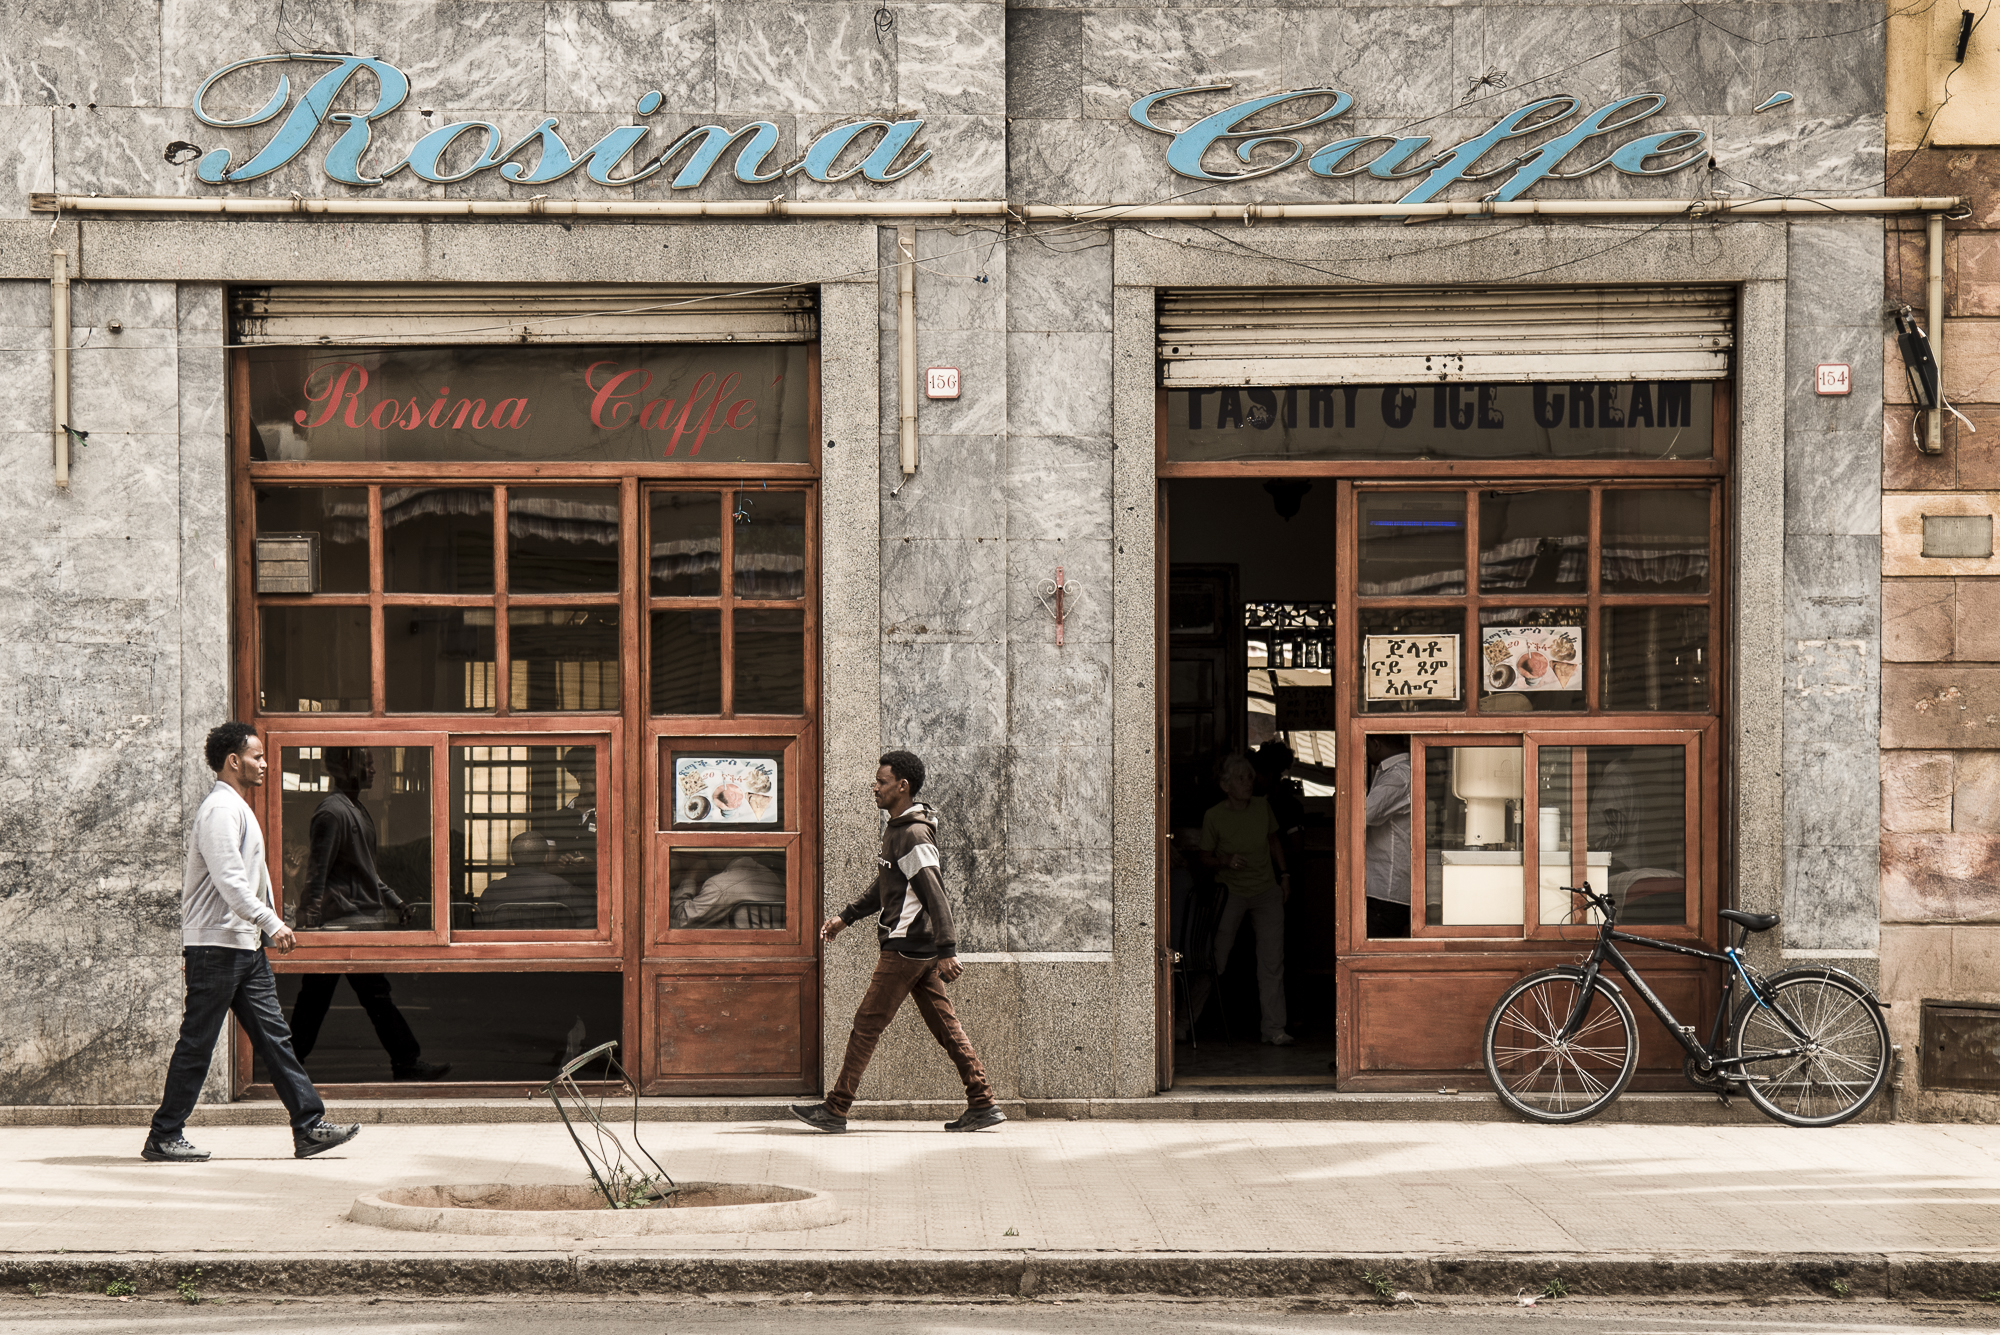 LO STRANO CASO DI REIRATE. Due persone camminano davanti al "Rosina Caffè" in un’ambientazione che ricorda l’Italia di qualche decennio fa. Questa è Asmara in Eritrea, ex-colonia italiana, dichiarata Patrimonio dell’Unesco nel 2017. ©Cristiano Zingale